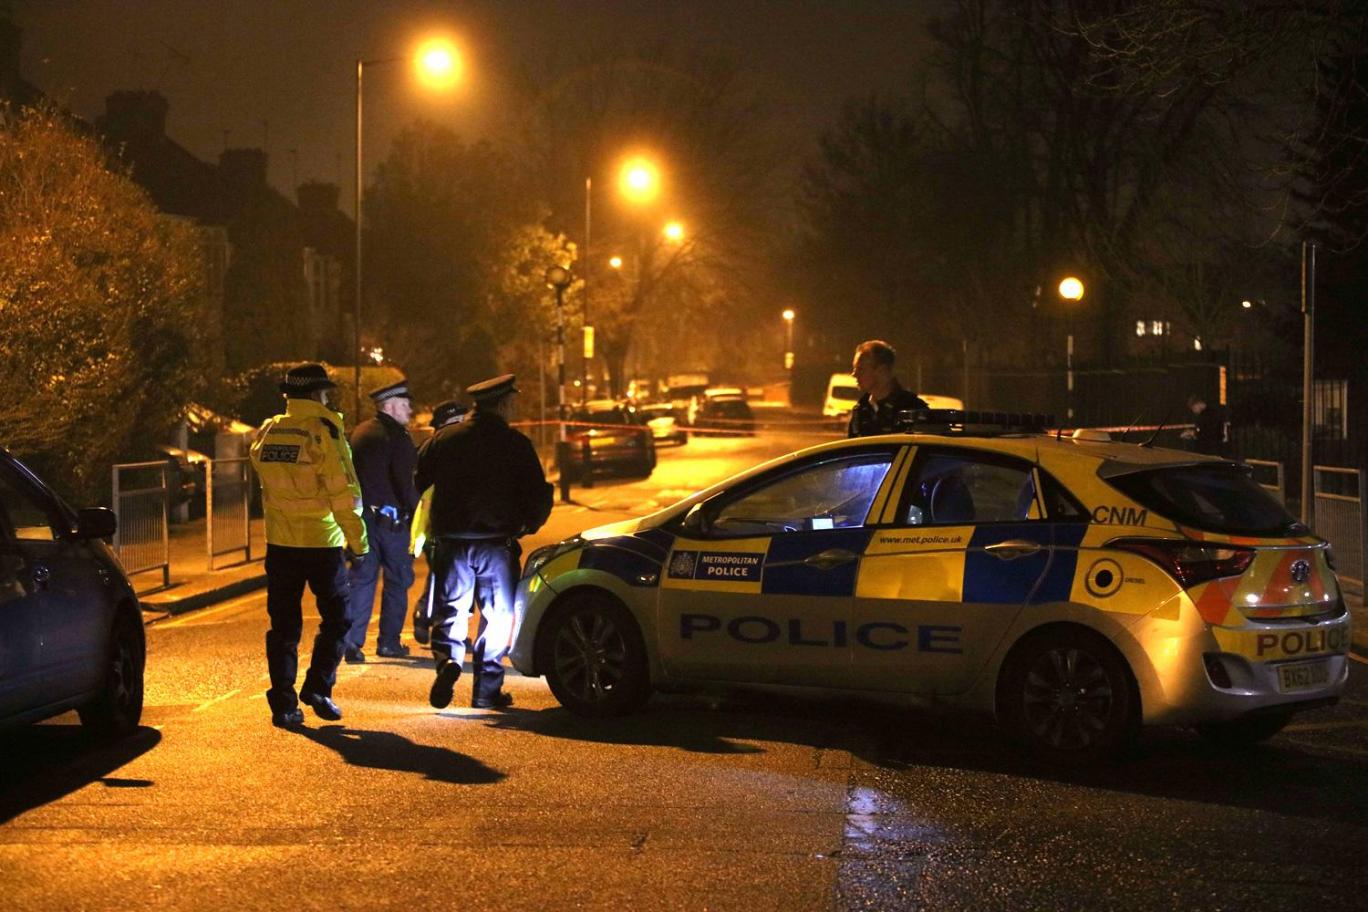 15 éves kisfiút szúrtak halálra Londonban, az iskolatársai szeme láttára az utcán 2